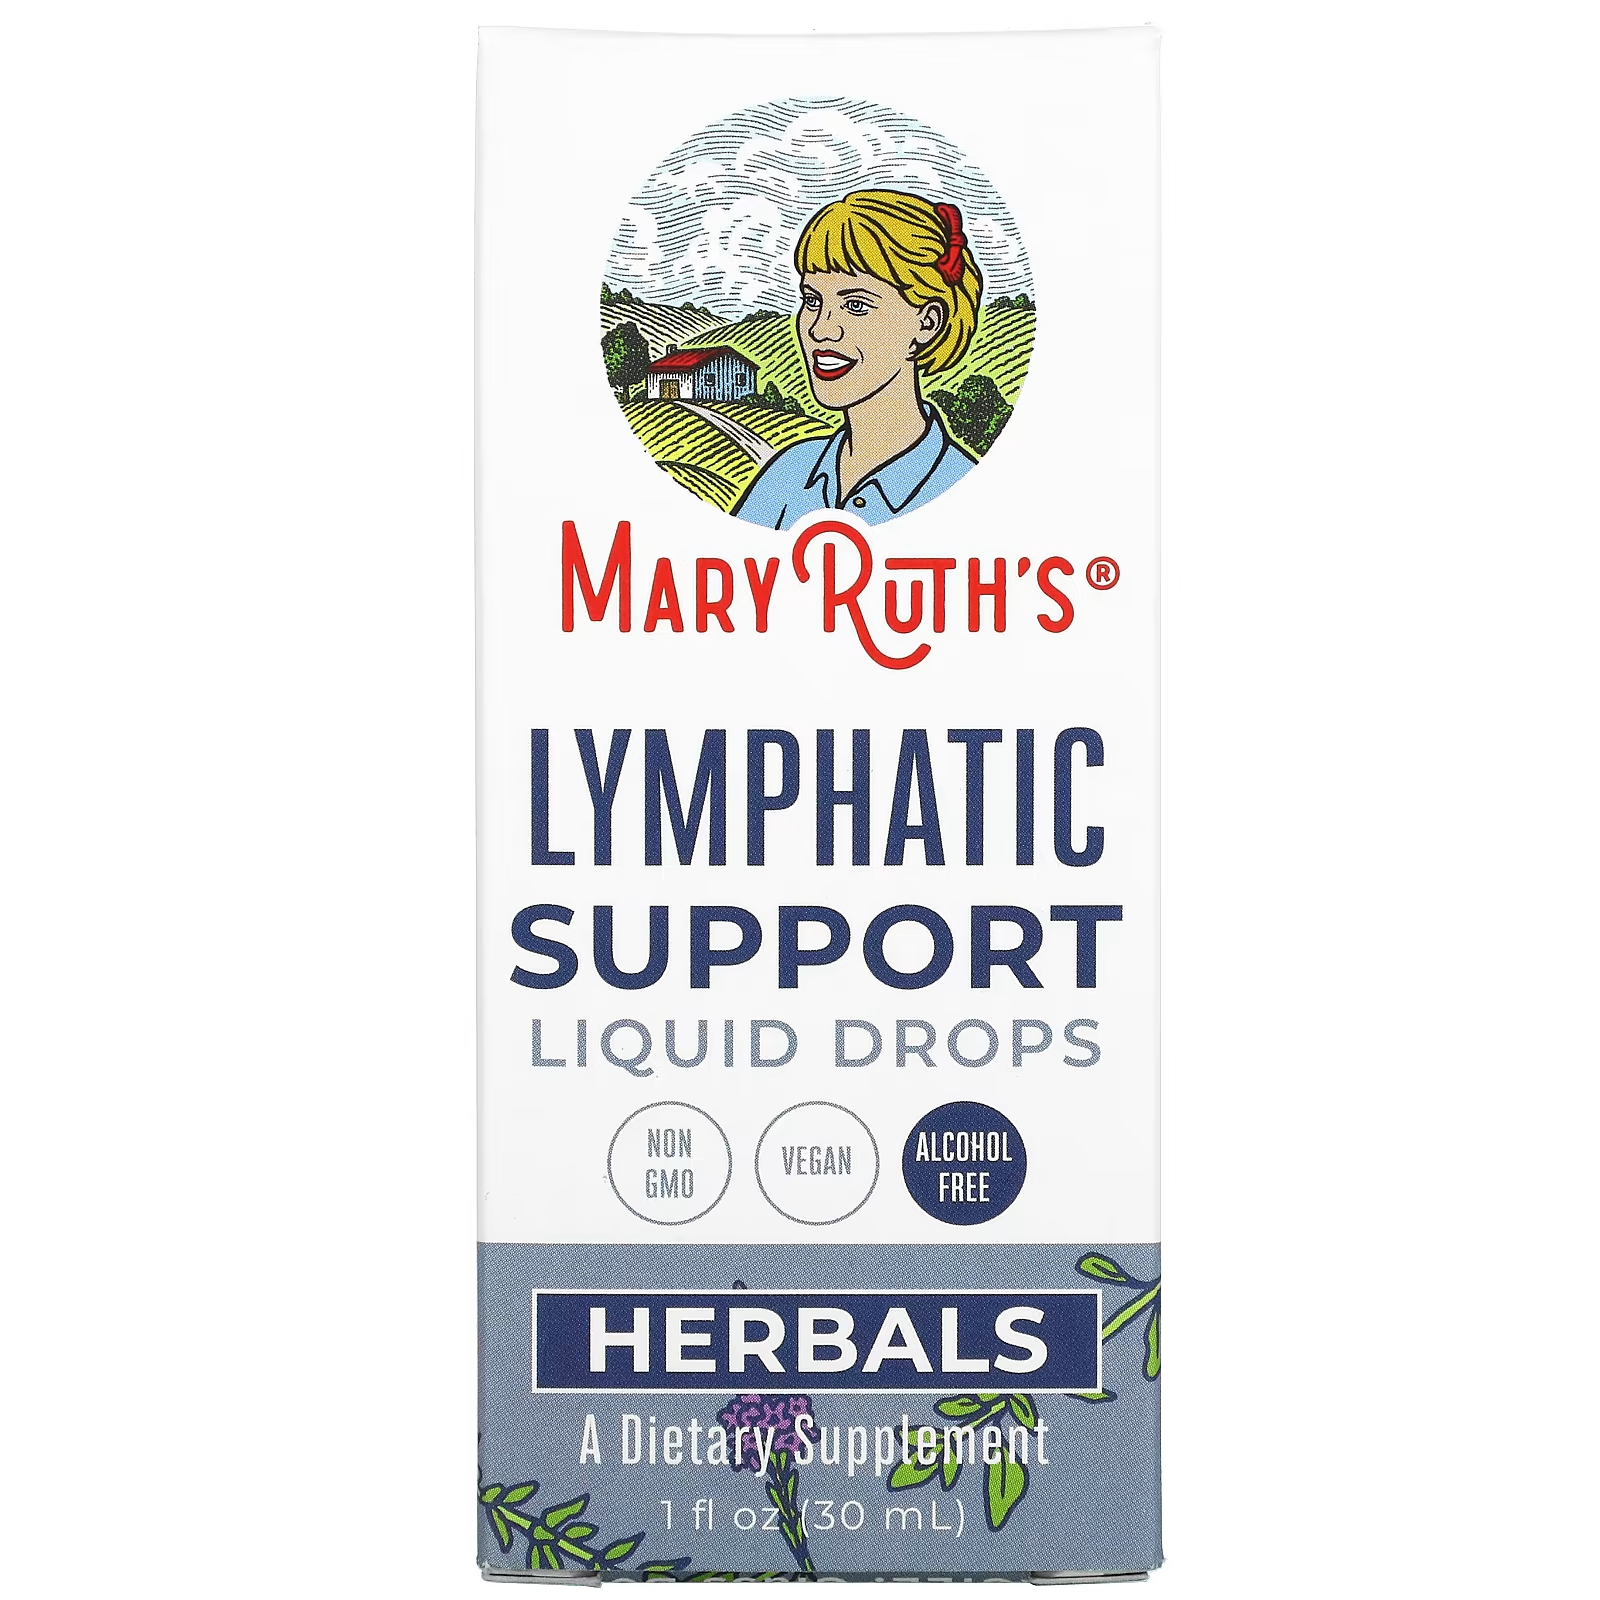 Капли MaryRuth's Herbals для поддержки лимфатической системы, 30 мл maryruth organics herbals жидкие капли для поддержки лимфатической системы без спирта 30 мл 1 жидк унция